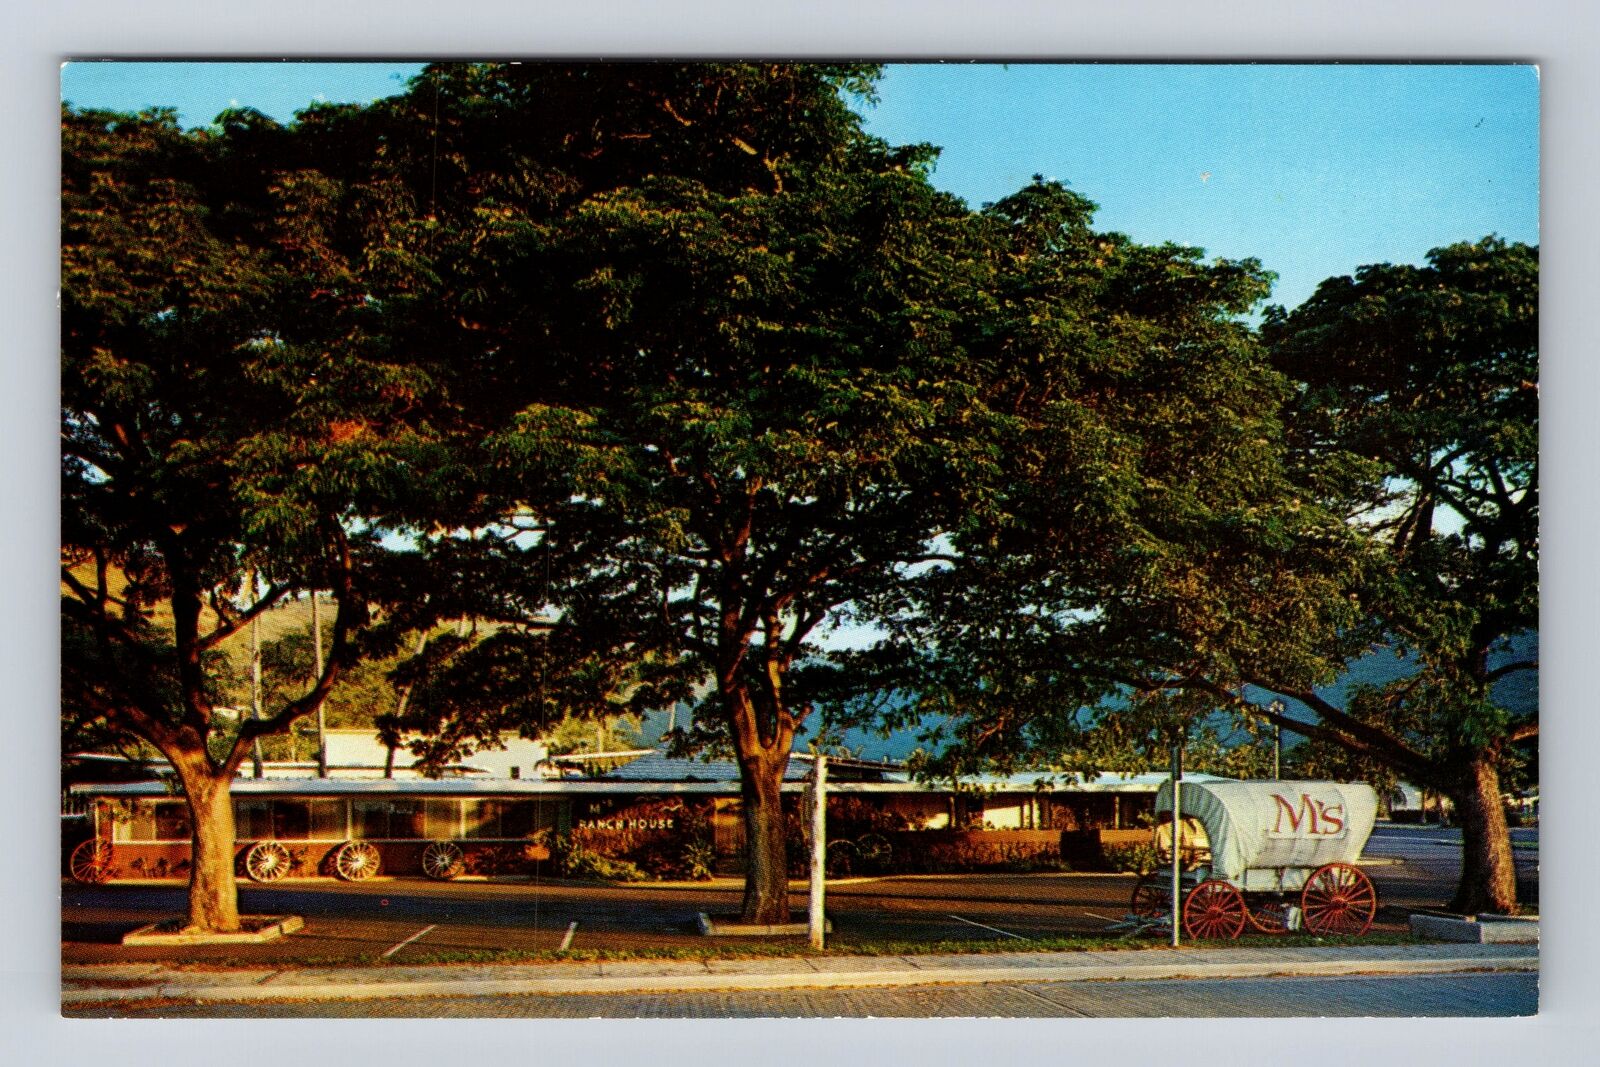 Honolulu HI- Hawaii, M's Ranch House, Antique, Vintage Souvenir Postcard